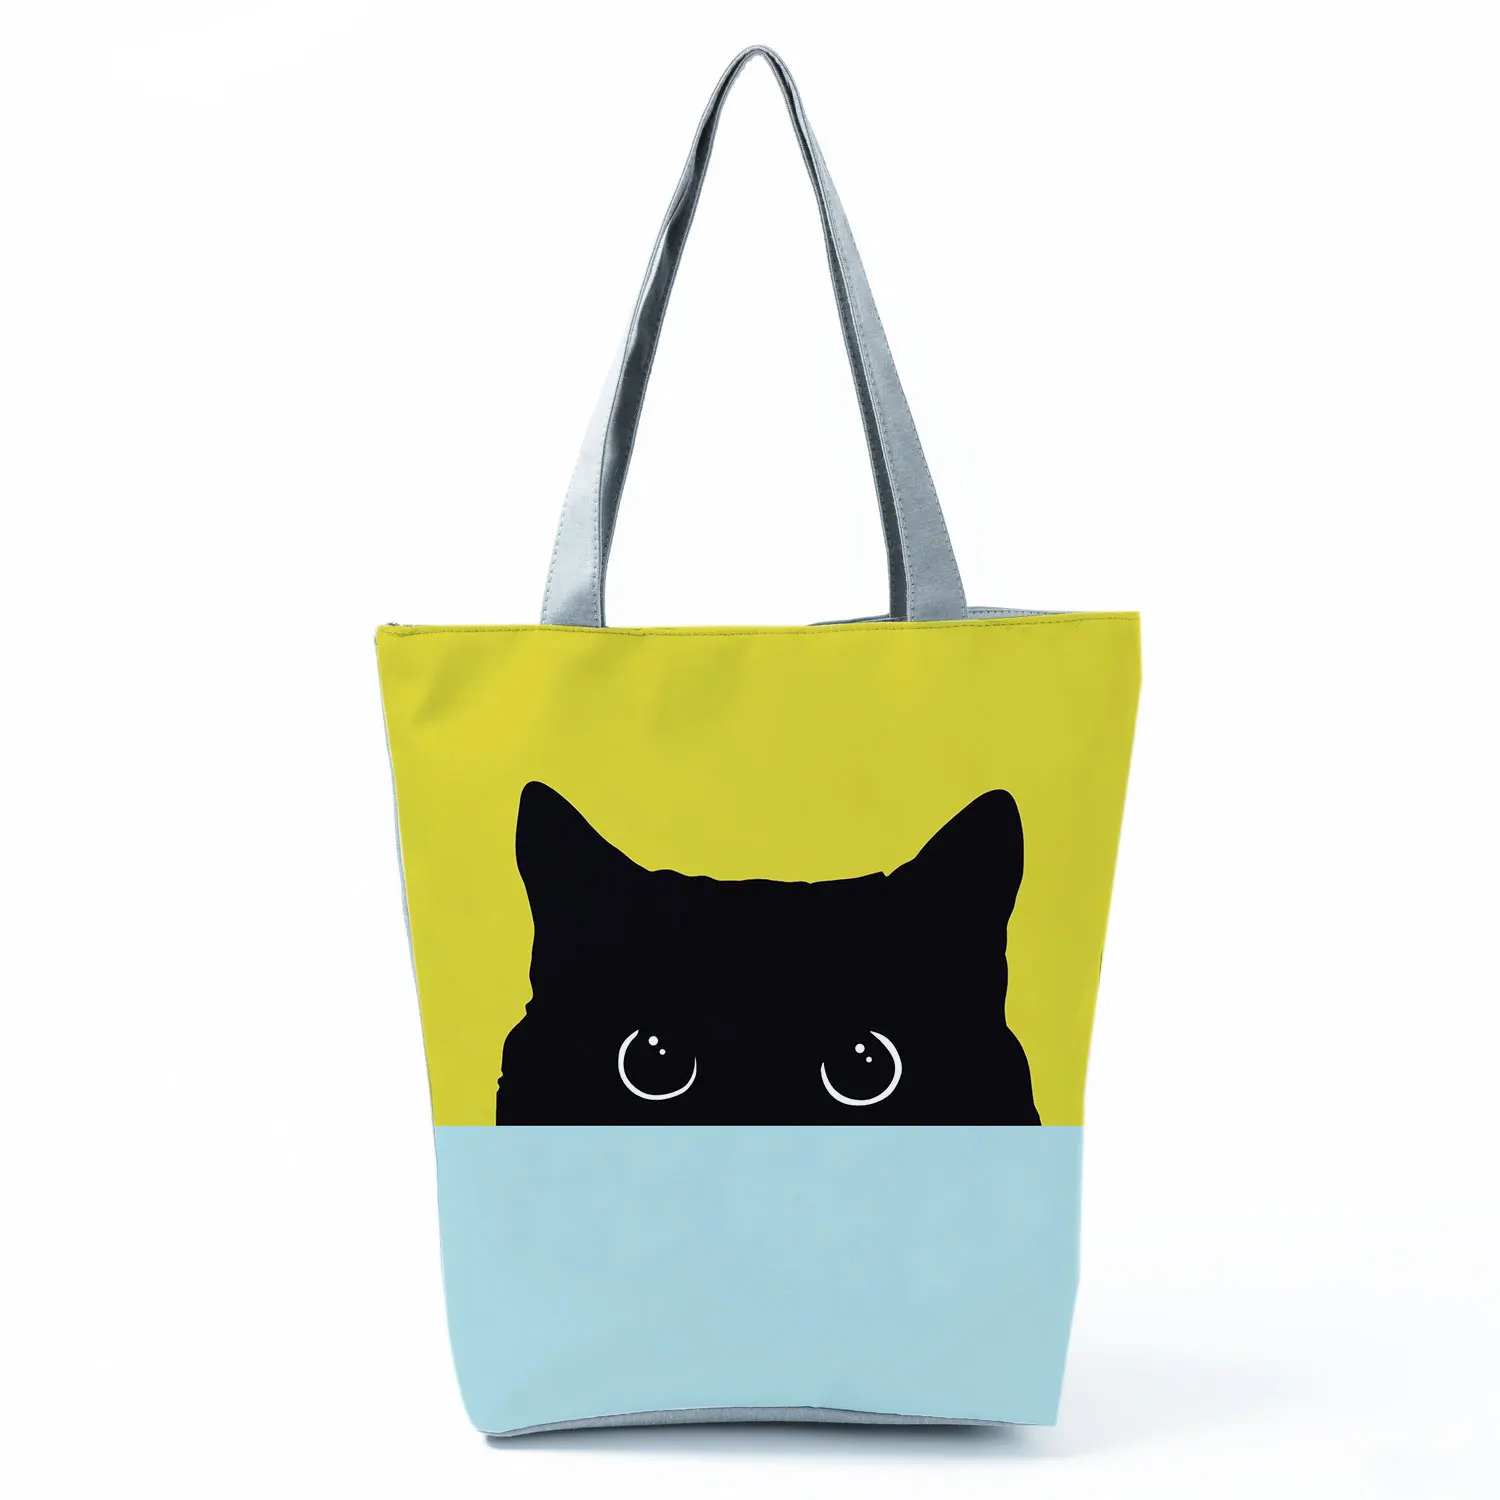 고양이 인쇄 된 저장소 핸드백화는 귀여운 동물 레이 큰 용량 재사용할 수 있는 쇼핑 백색 학생은 학교 가방